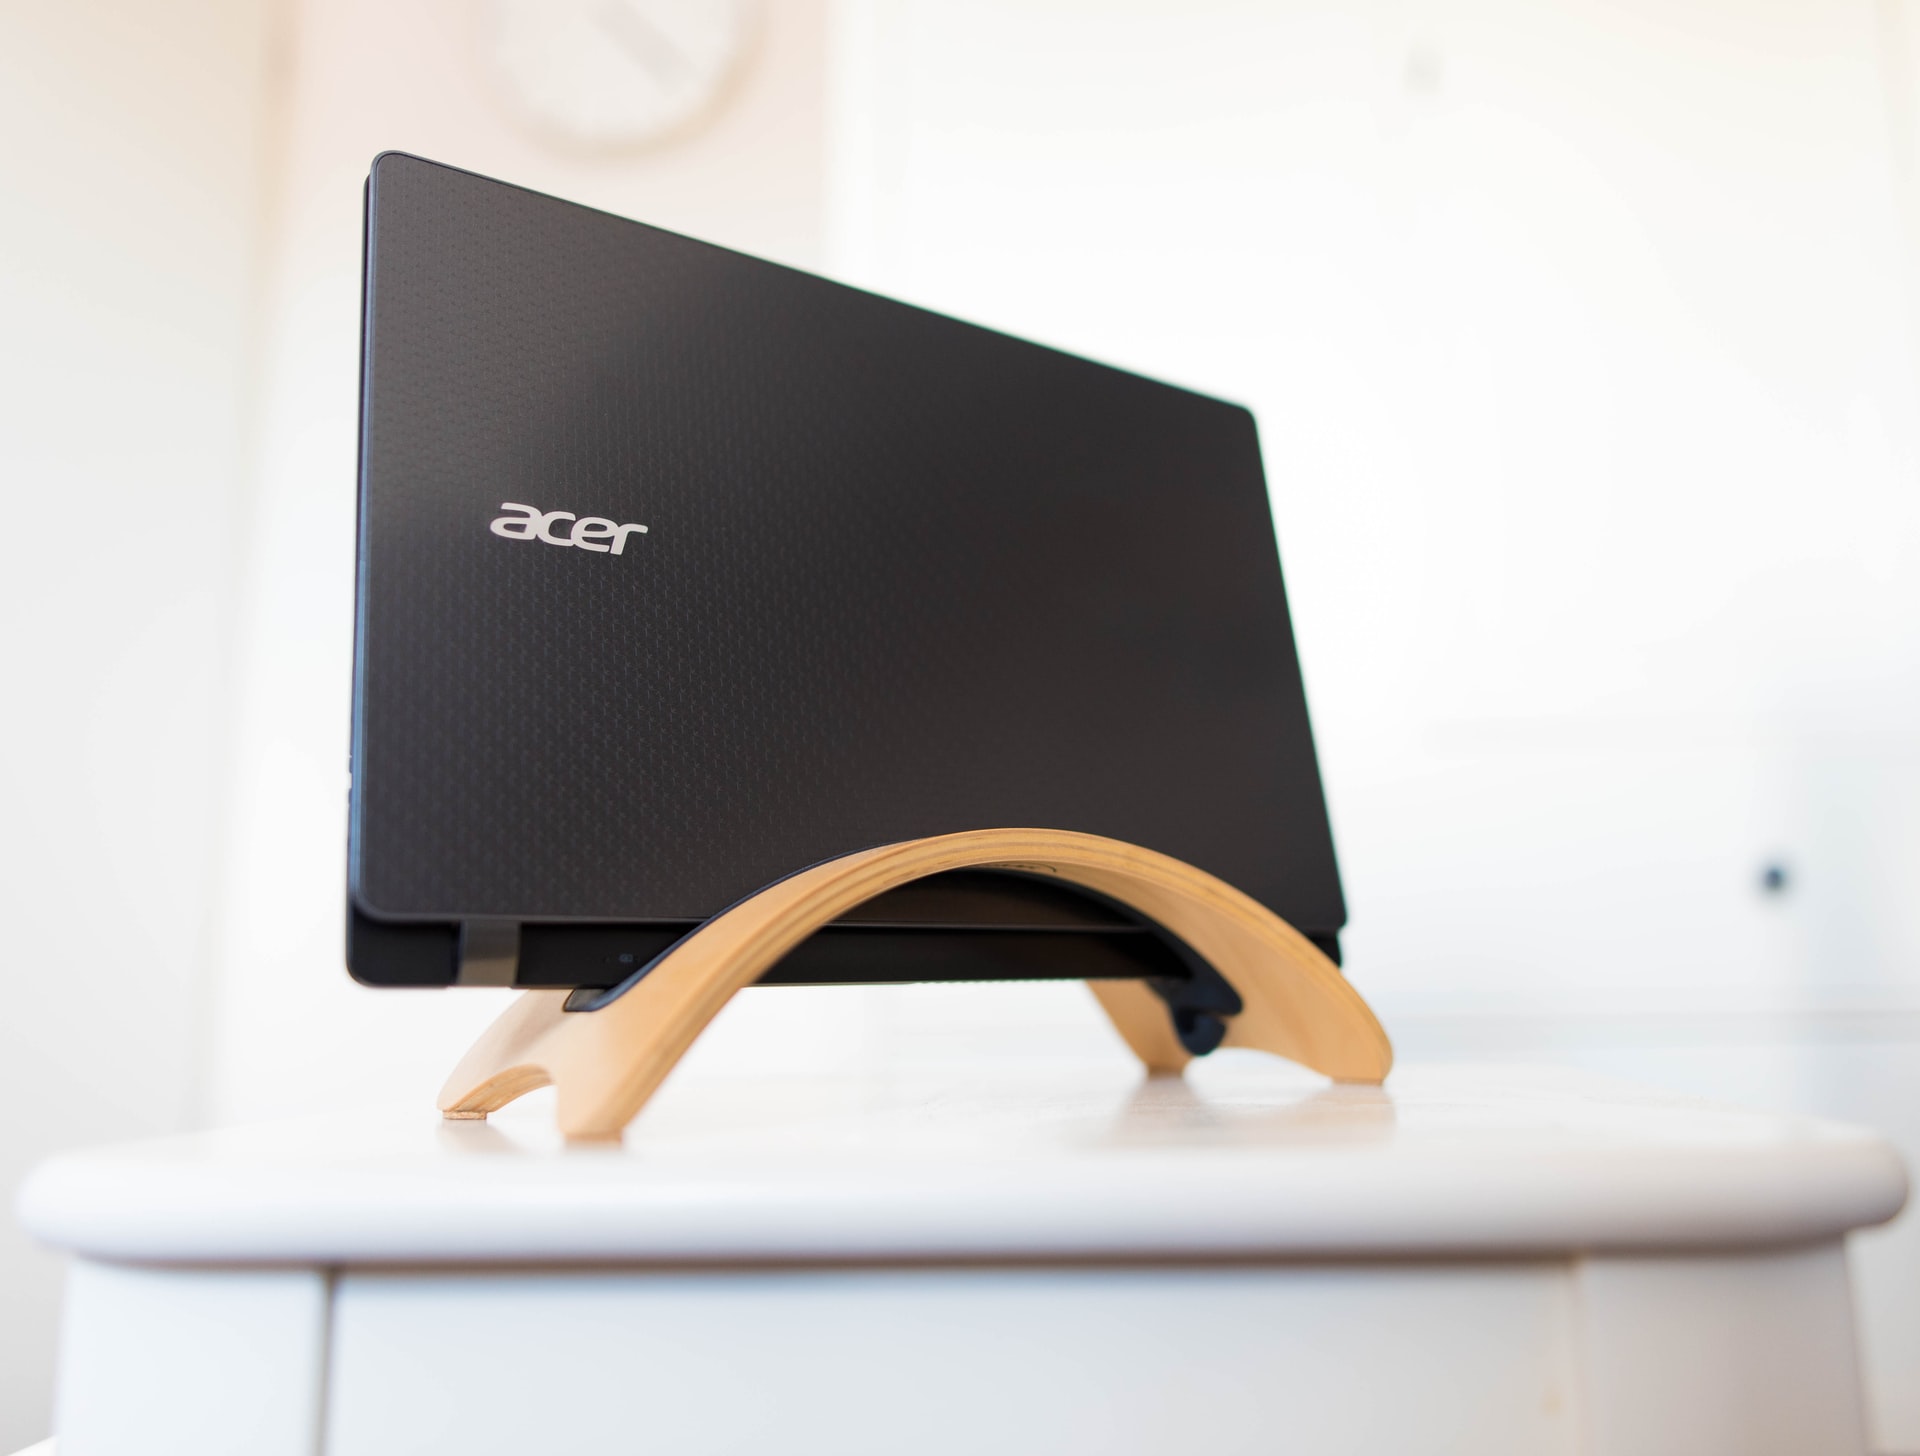 Acer signale une attaque réussie contre ses serveurs